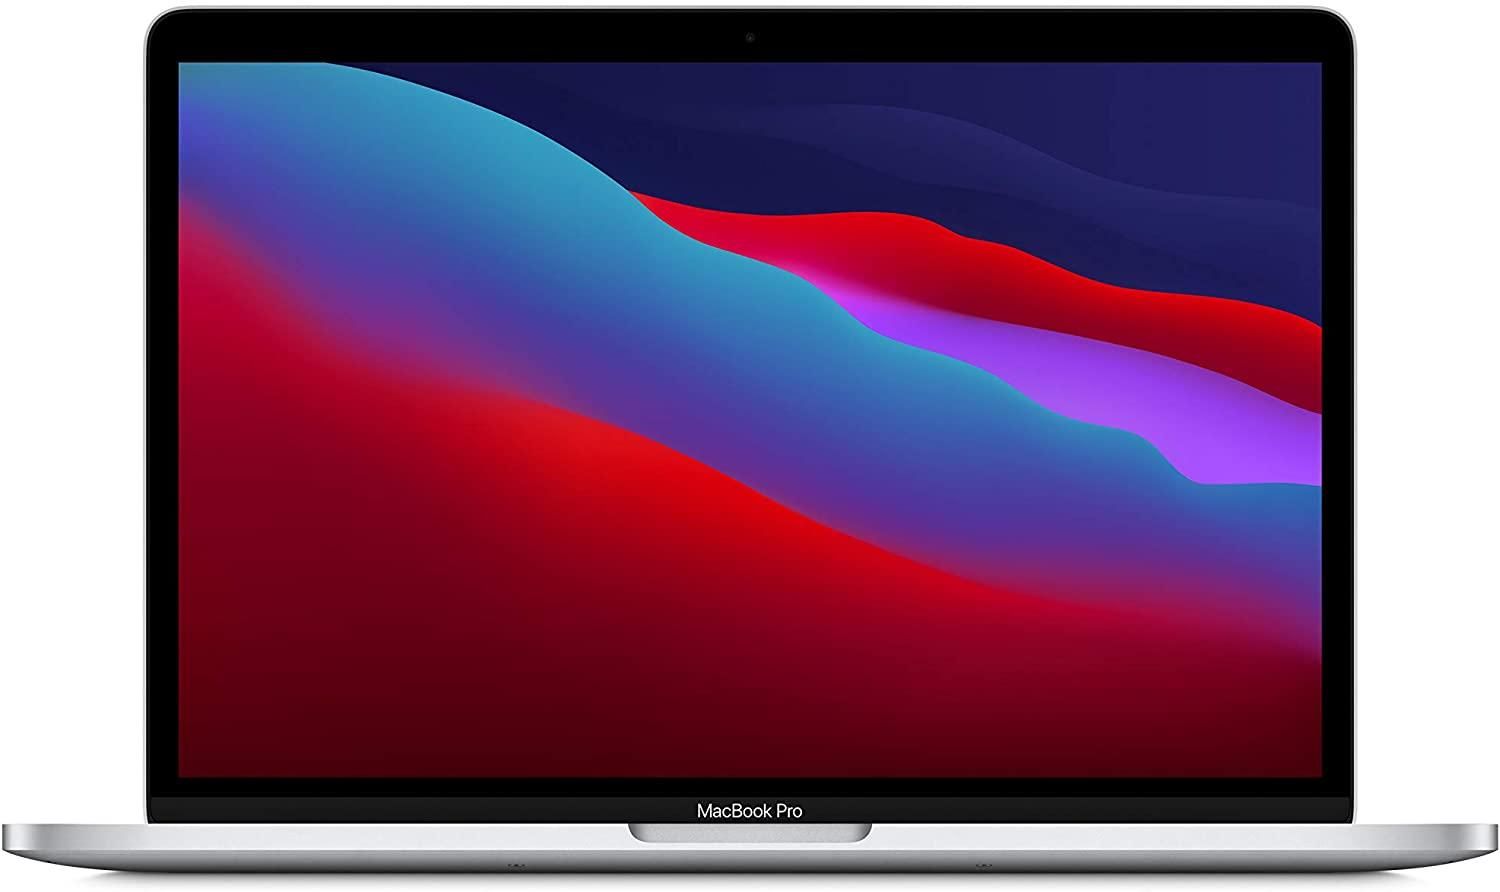 13 inç MacBook Pro ürün kutusu resmi